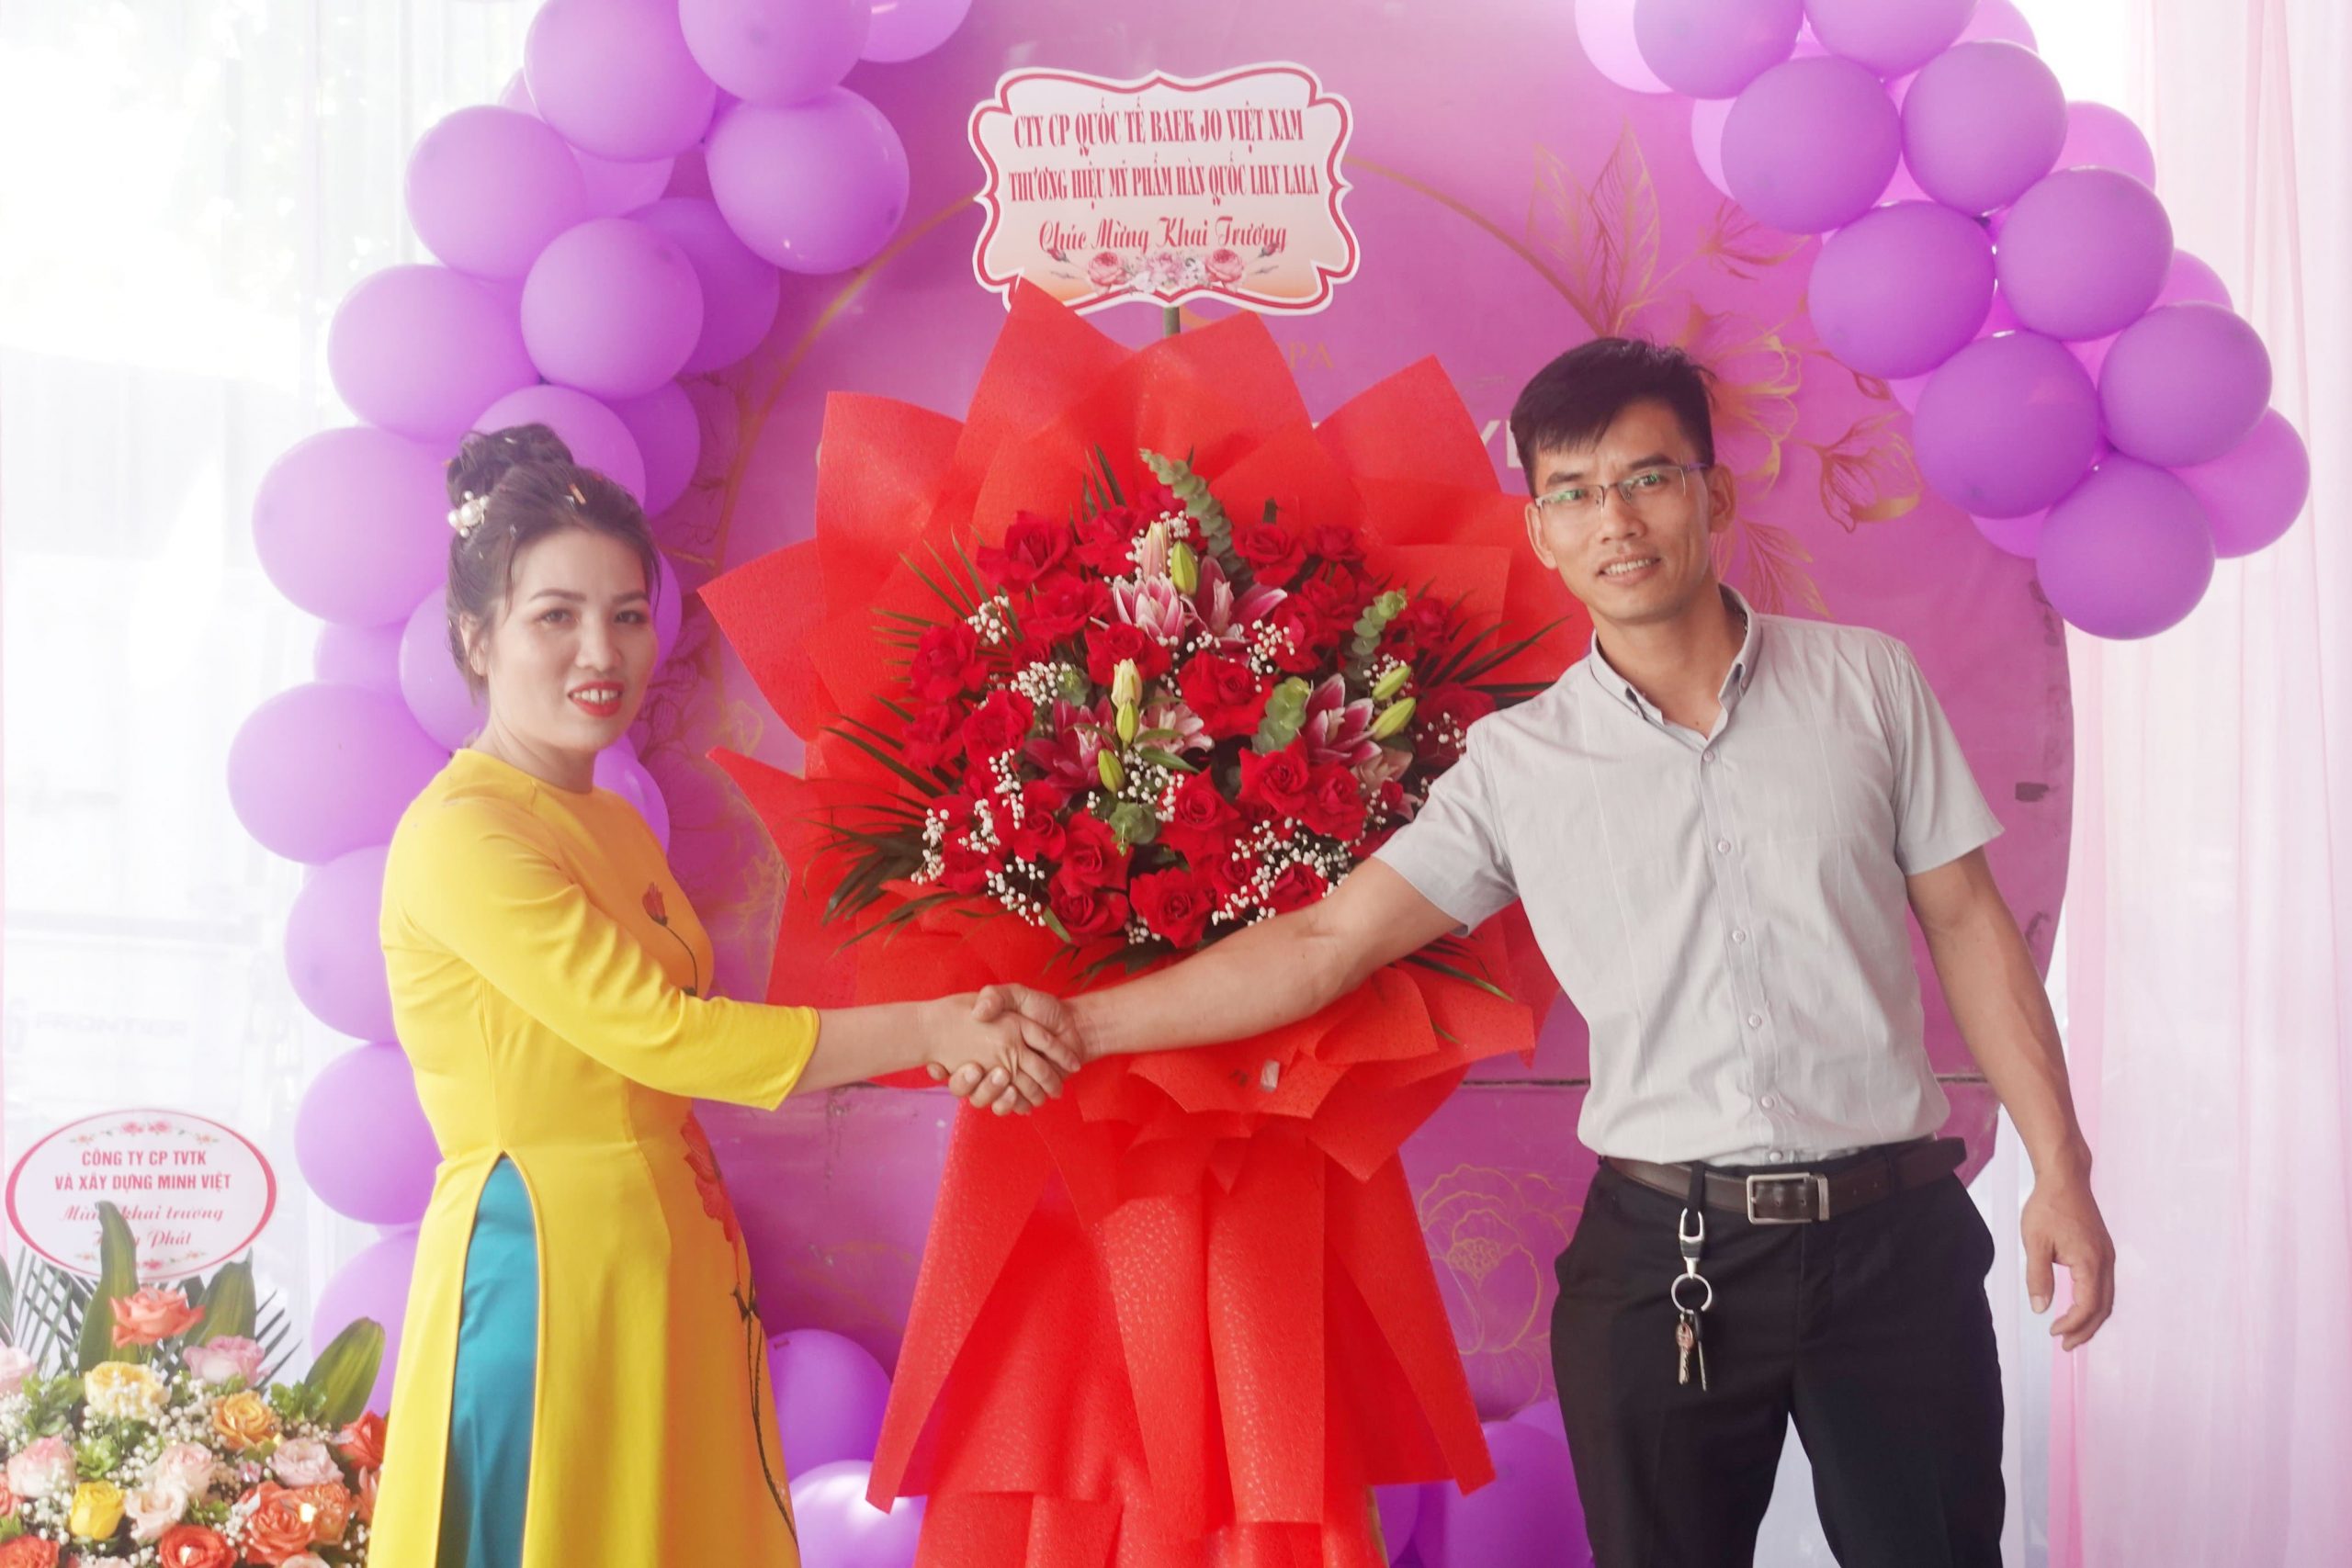 Giám đốc dự án Dương Phương Thọ chúc khai trương hồng phát